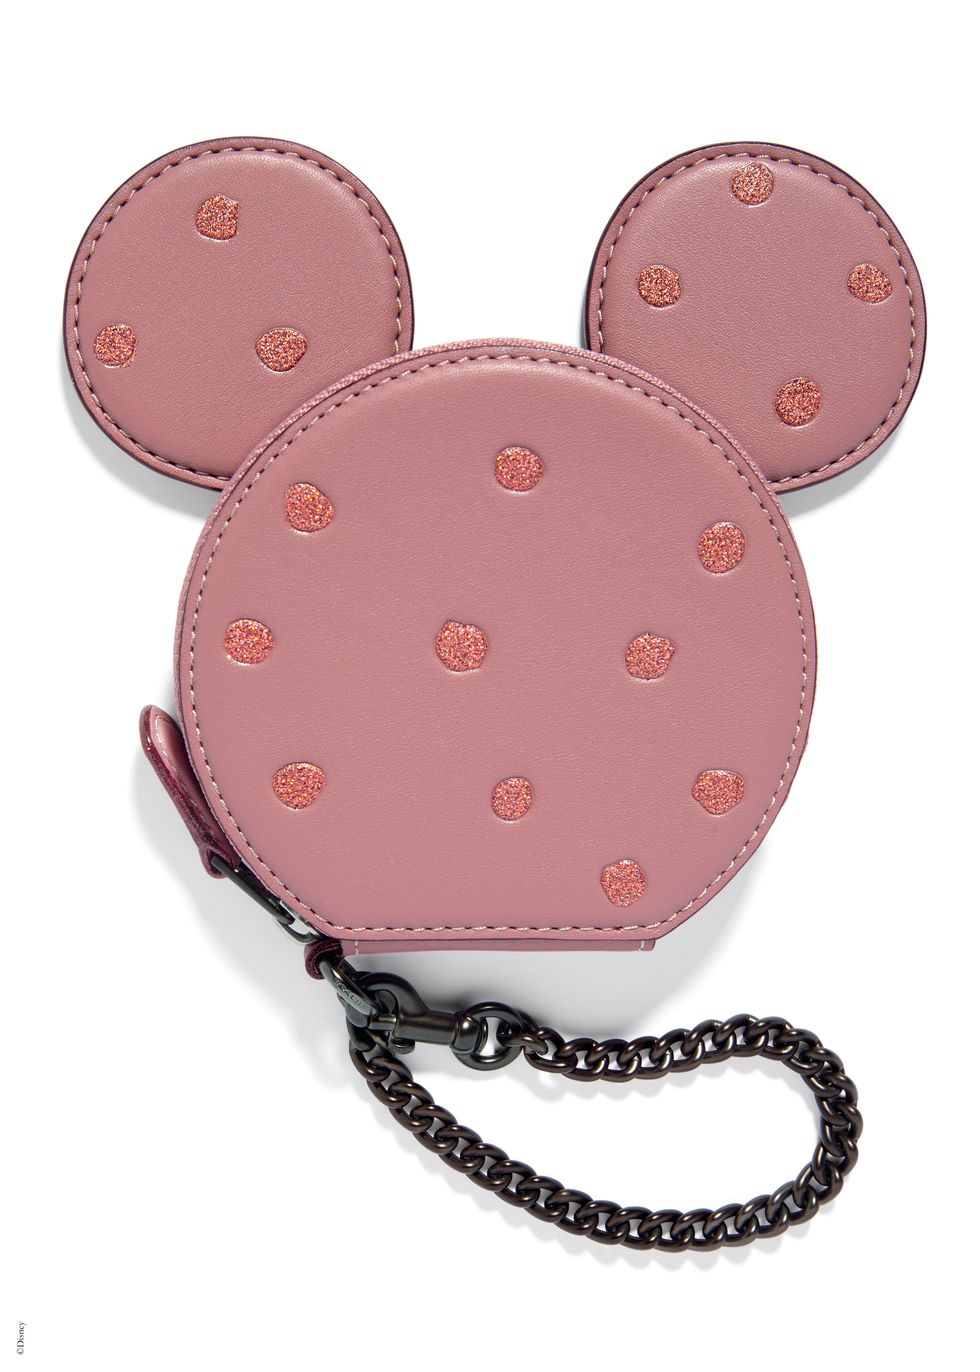 Coach, Bags, Posh Exclusive Nwt Coach Disney X Coach Minnie Mouse  Kisslock Bag